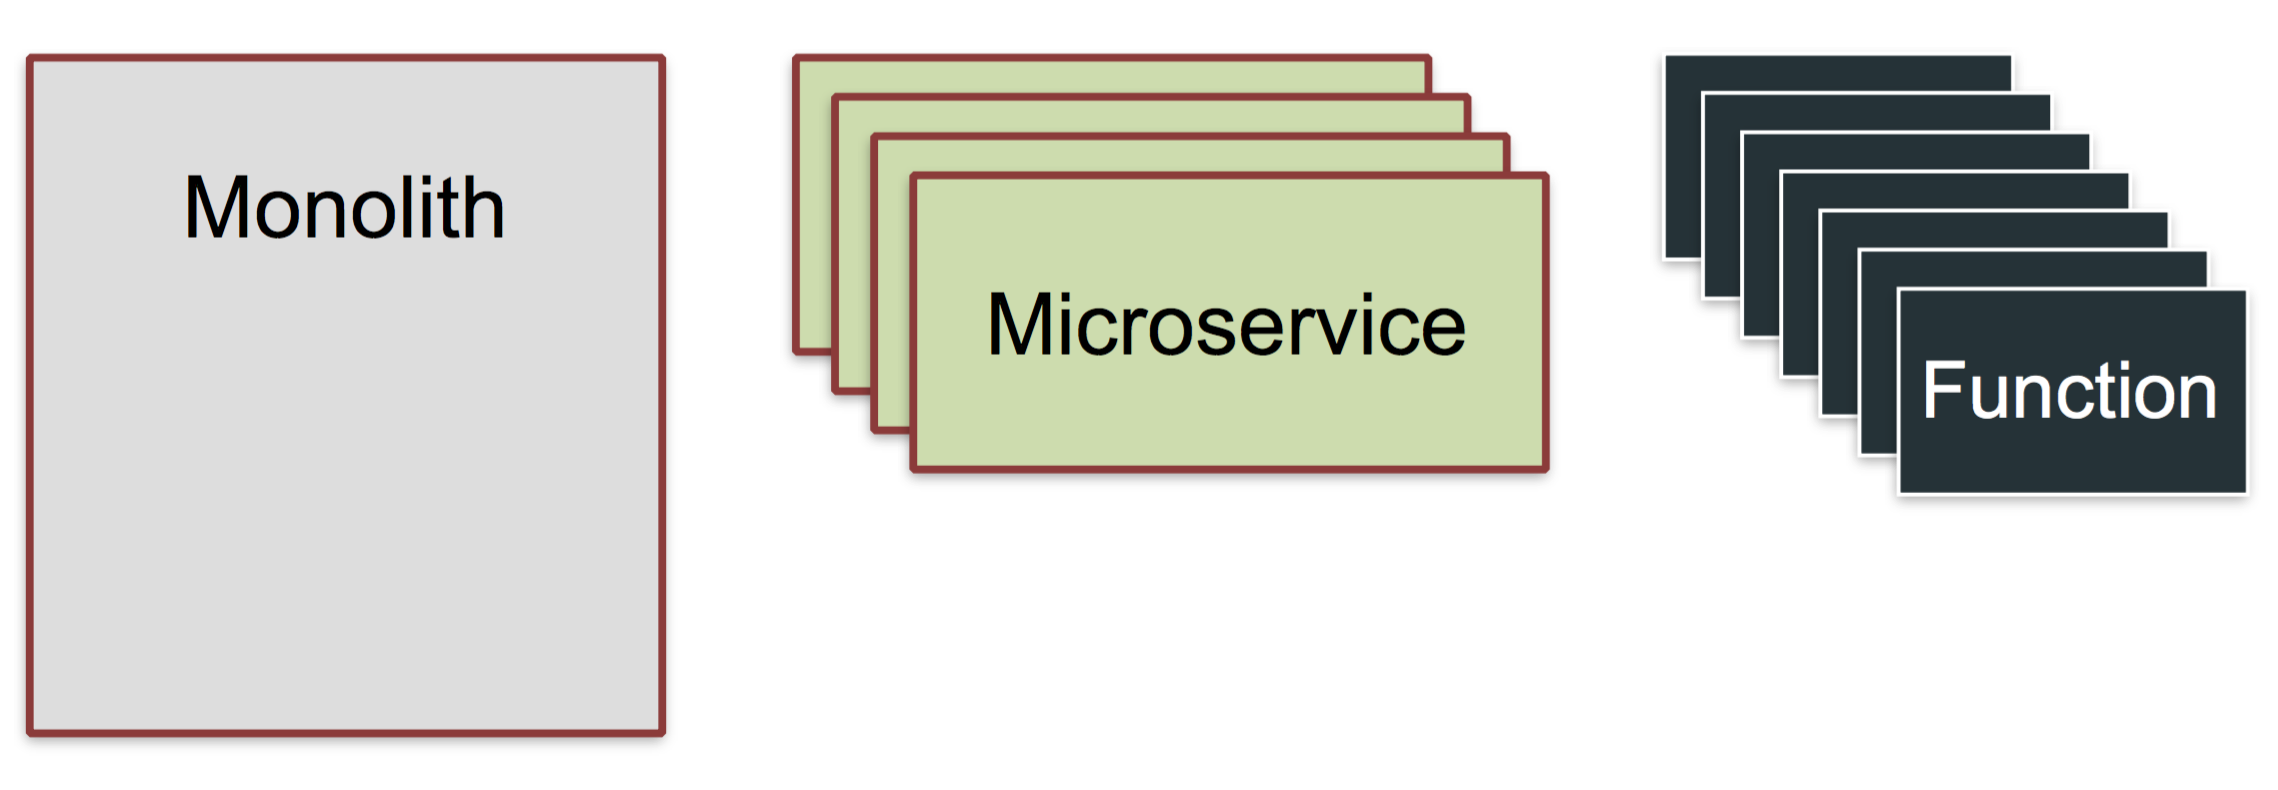 Serverless 架构也引出了“功能即服务服务”模式，简称 FaaS